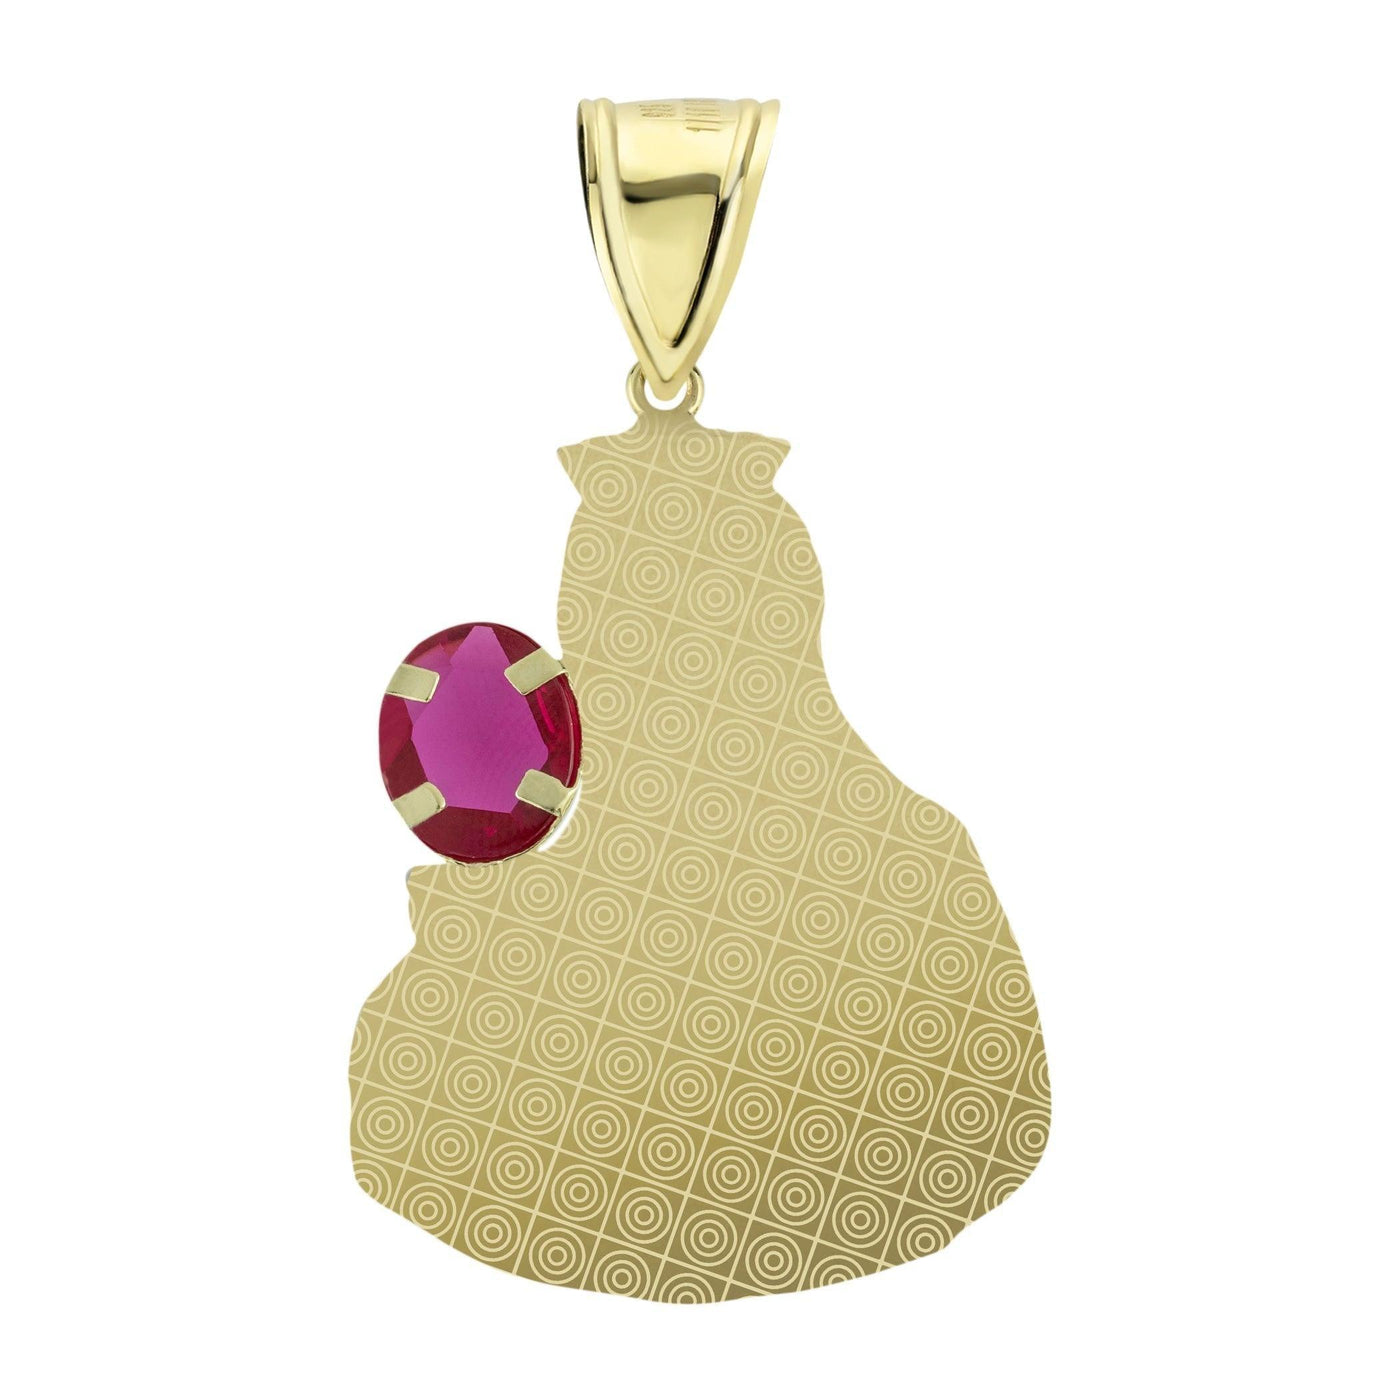 2 1/4" Saint Barbara Diamond Cut Ruby Pendant 10K Yellow Gold - bayamjewelry